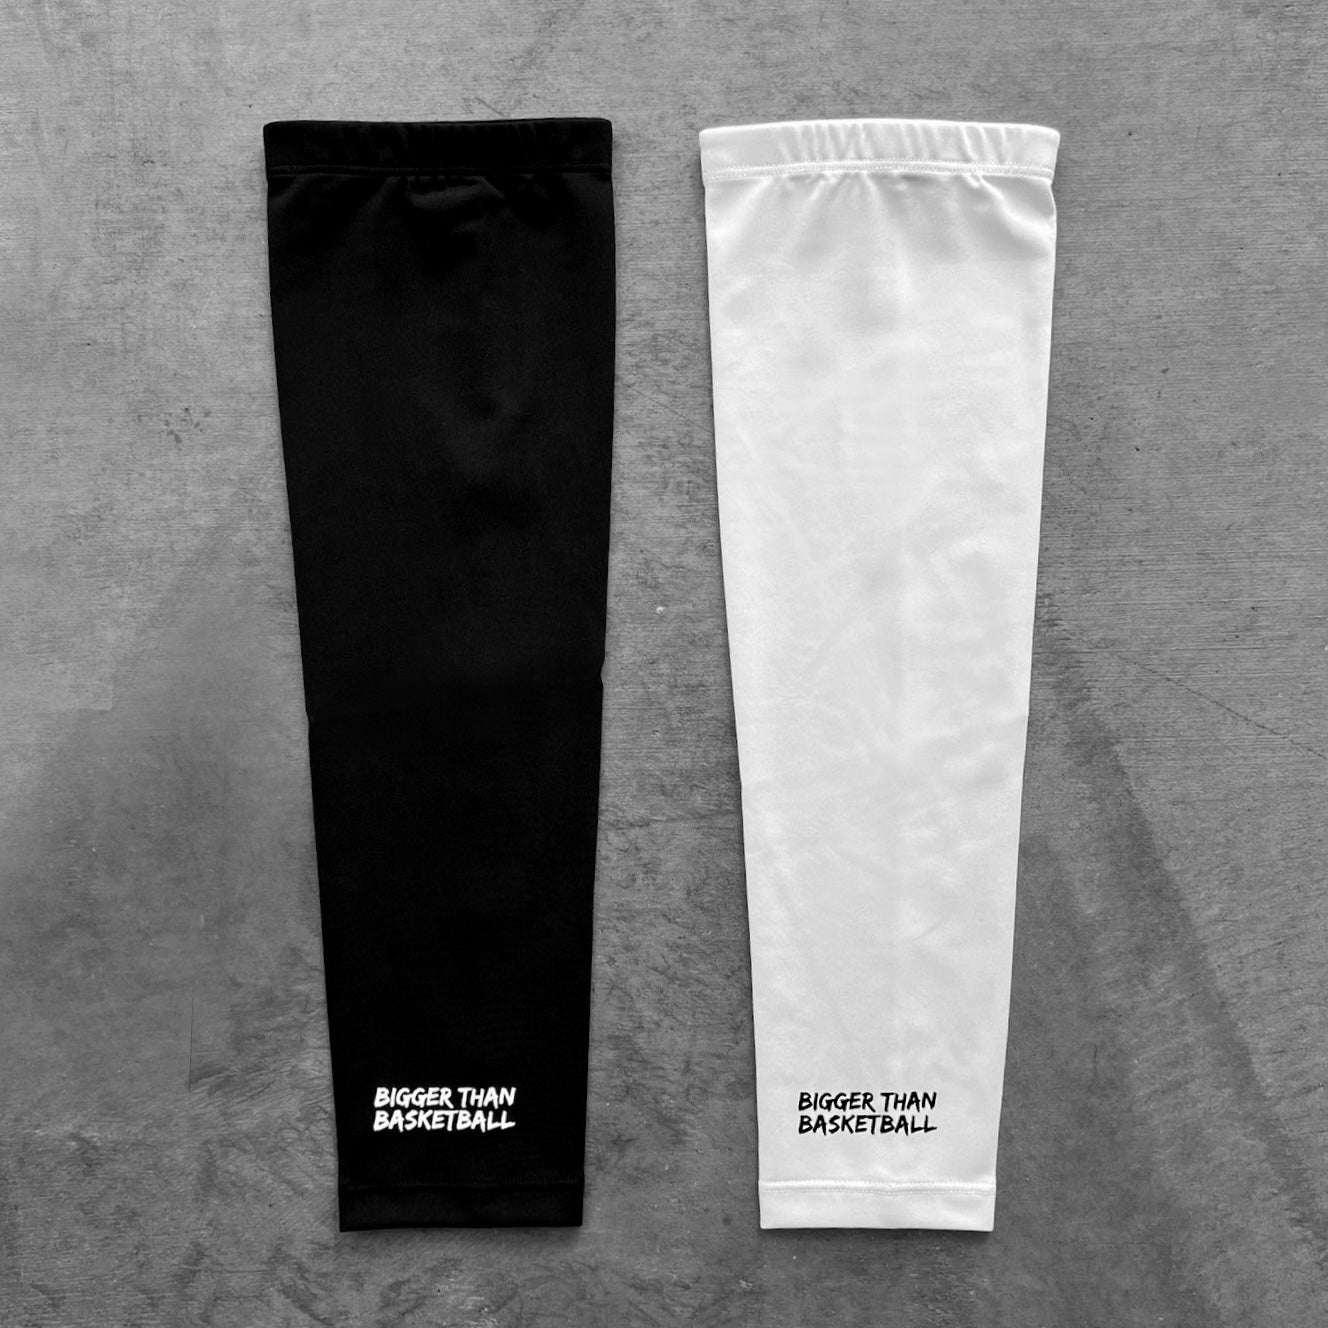 Performance Arm Sleeve - Black